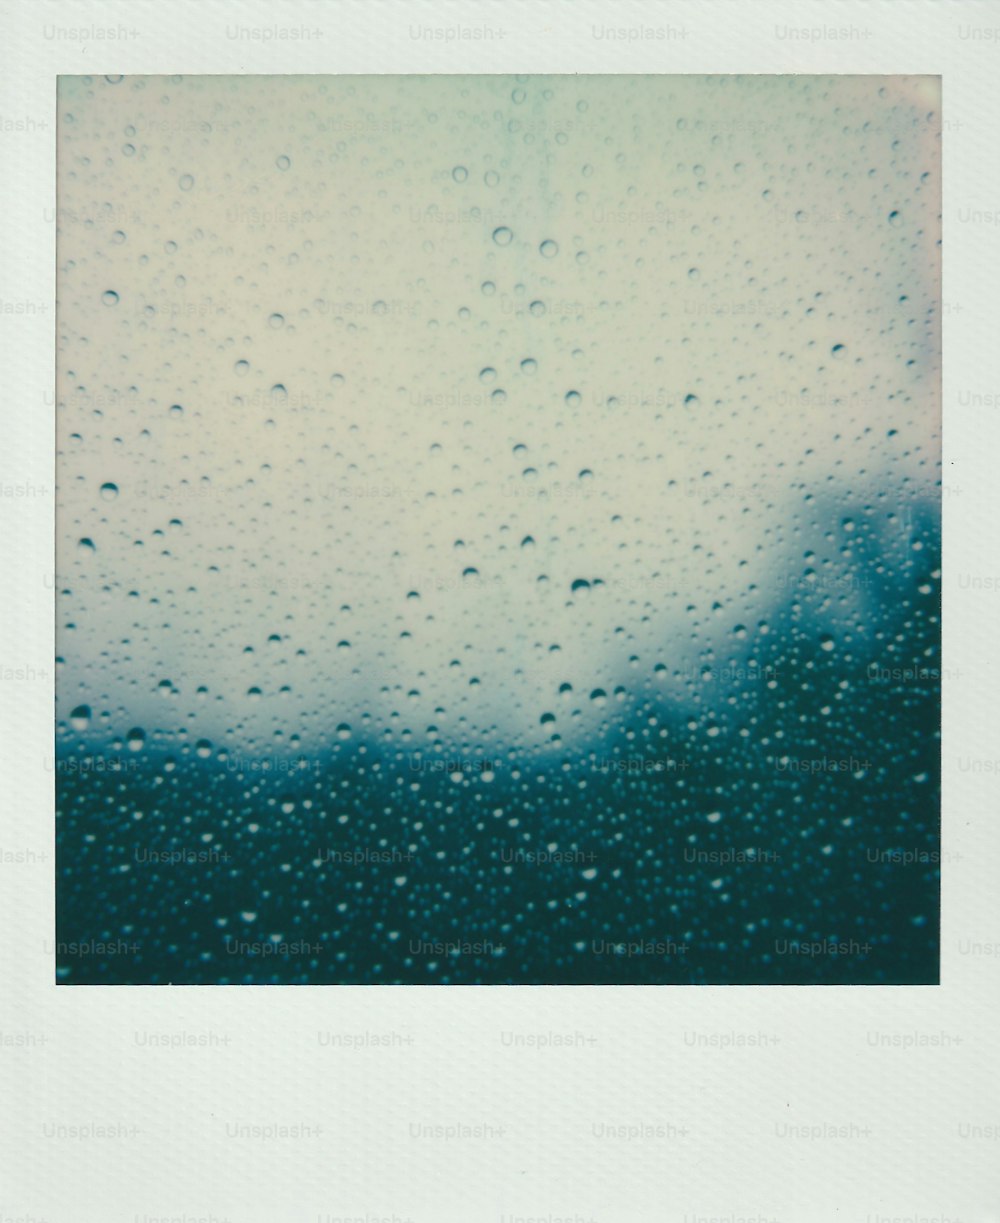 une image de gouttes de pluie sur une fenêtre